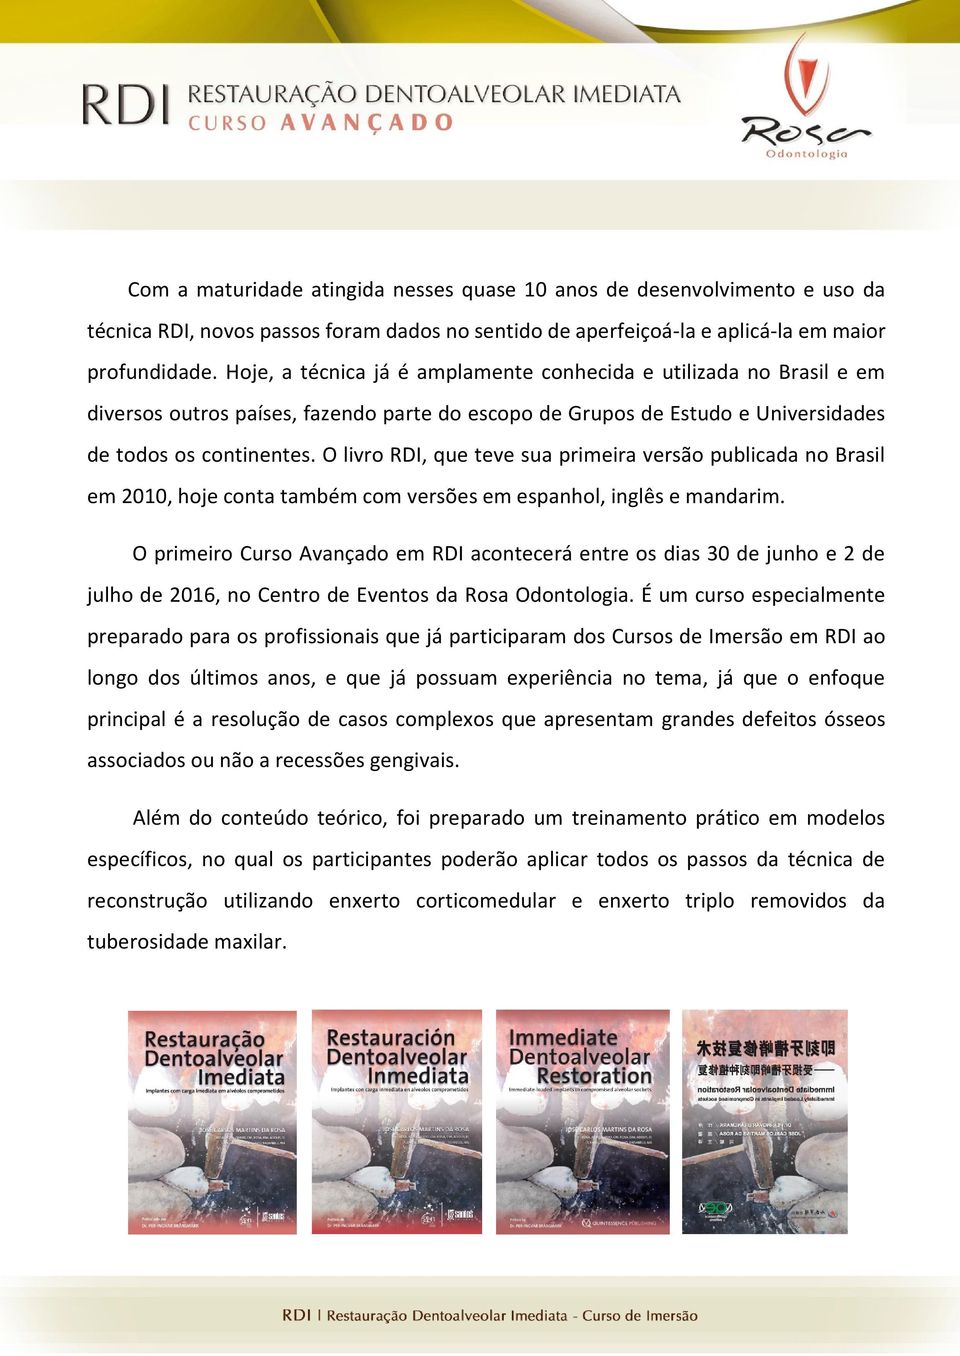 O livro RDI, que teve sua primeira versão publicada no Brasil em 2010, hoje conta também com versões em espanhol, inglês e mandarim.